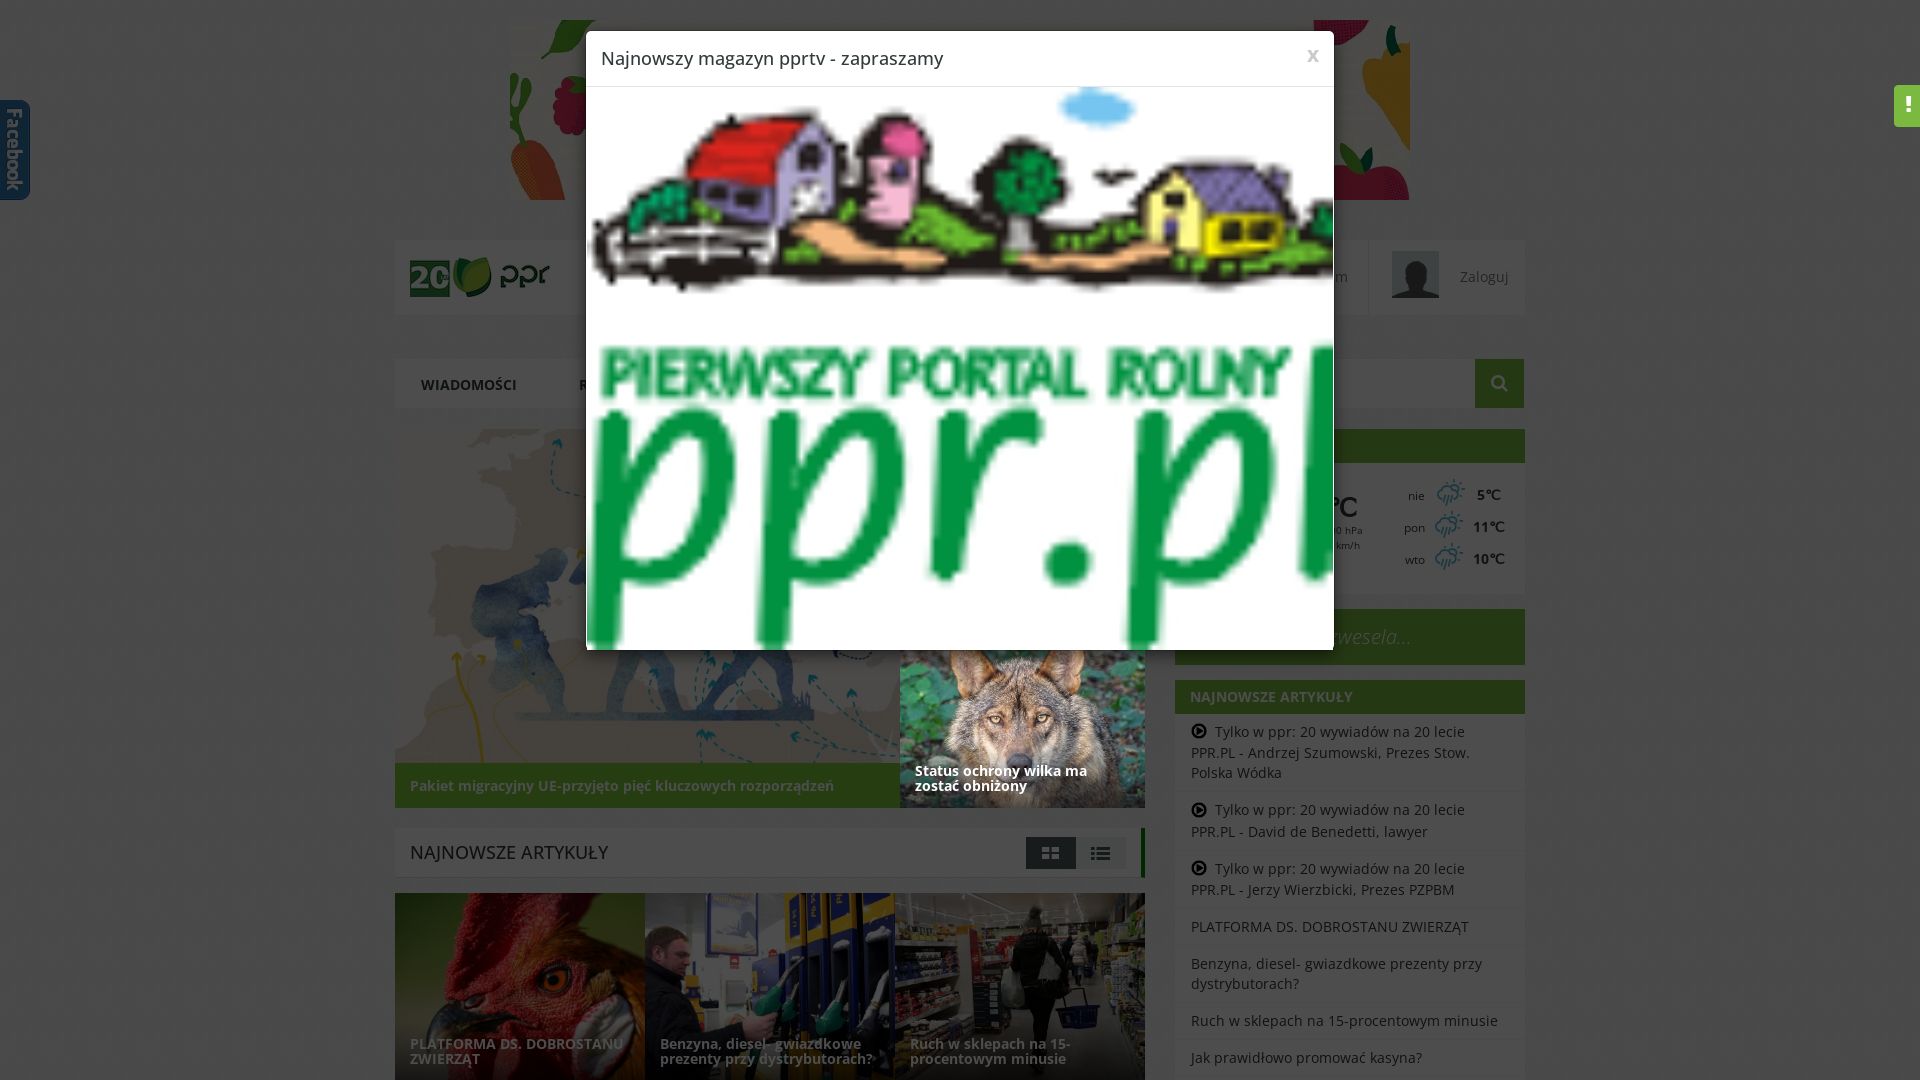 вебсайт ppr.pl Є   ONLINE